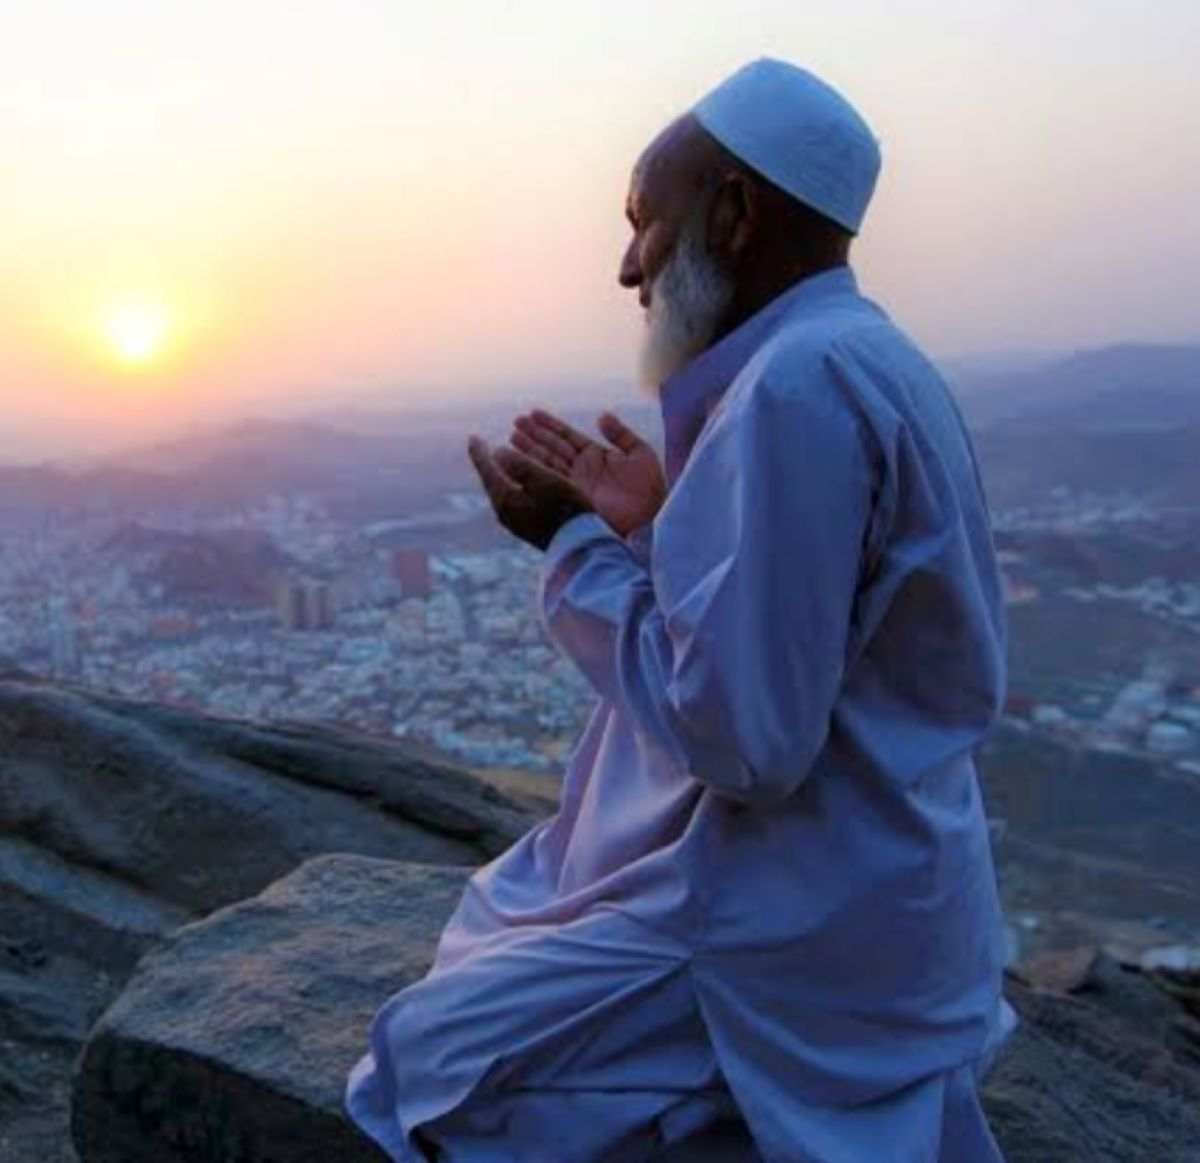 Kisah Uqbah bin Amir Al-Juhani, Seorang Sahabat Pengembala Kambing yang menulis Al-Qur'an